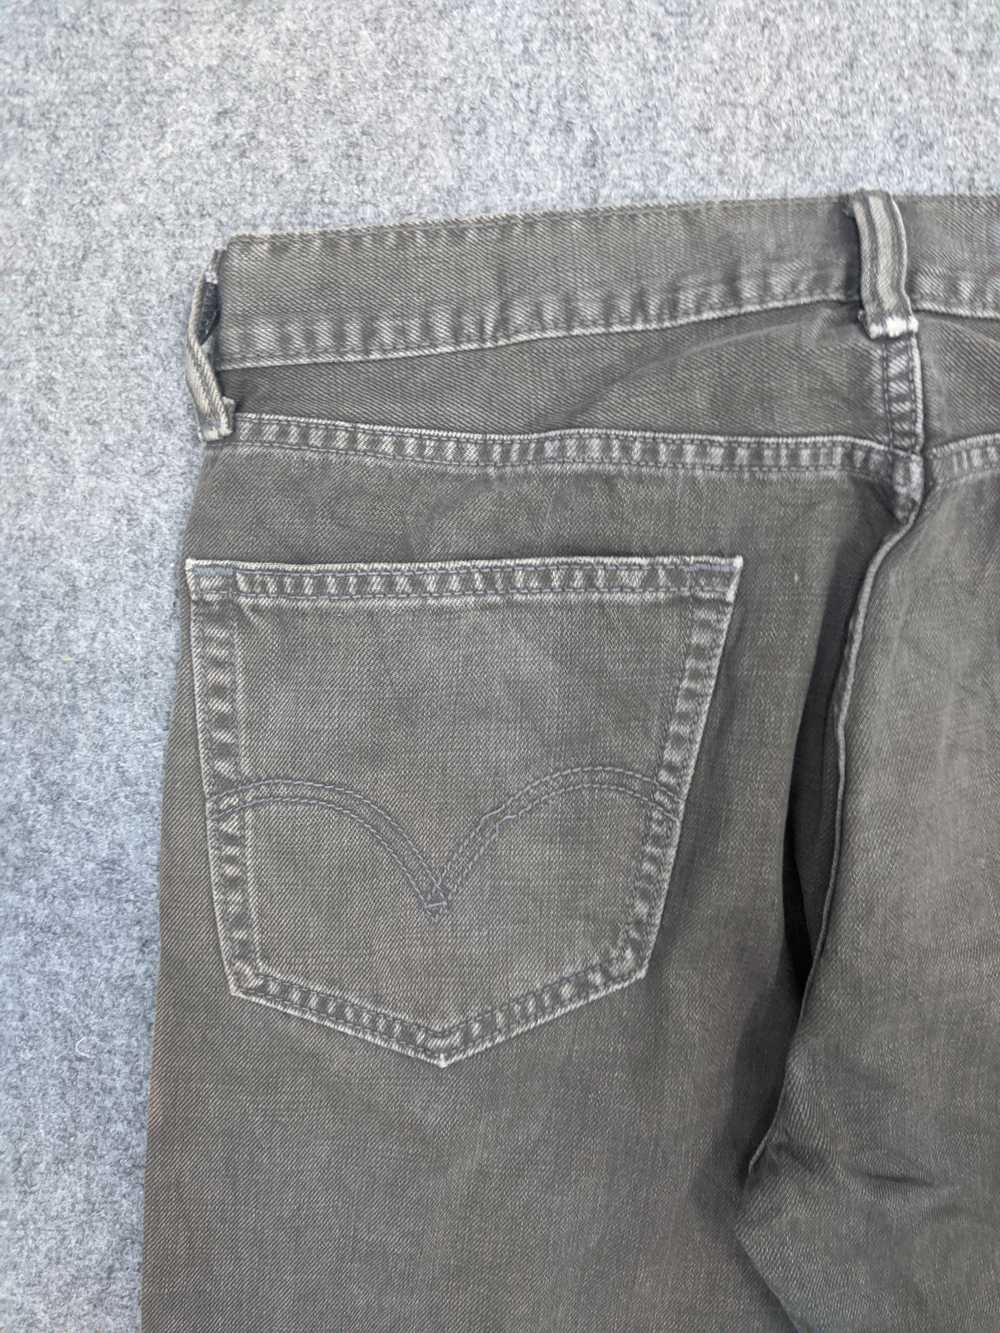 Vintage - Vintage Levis 505 Light Wash Jeans - image 11